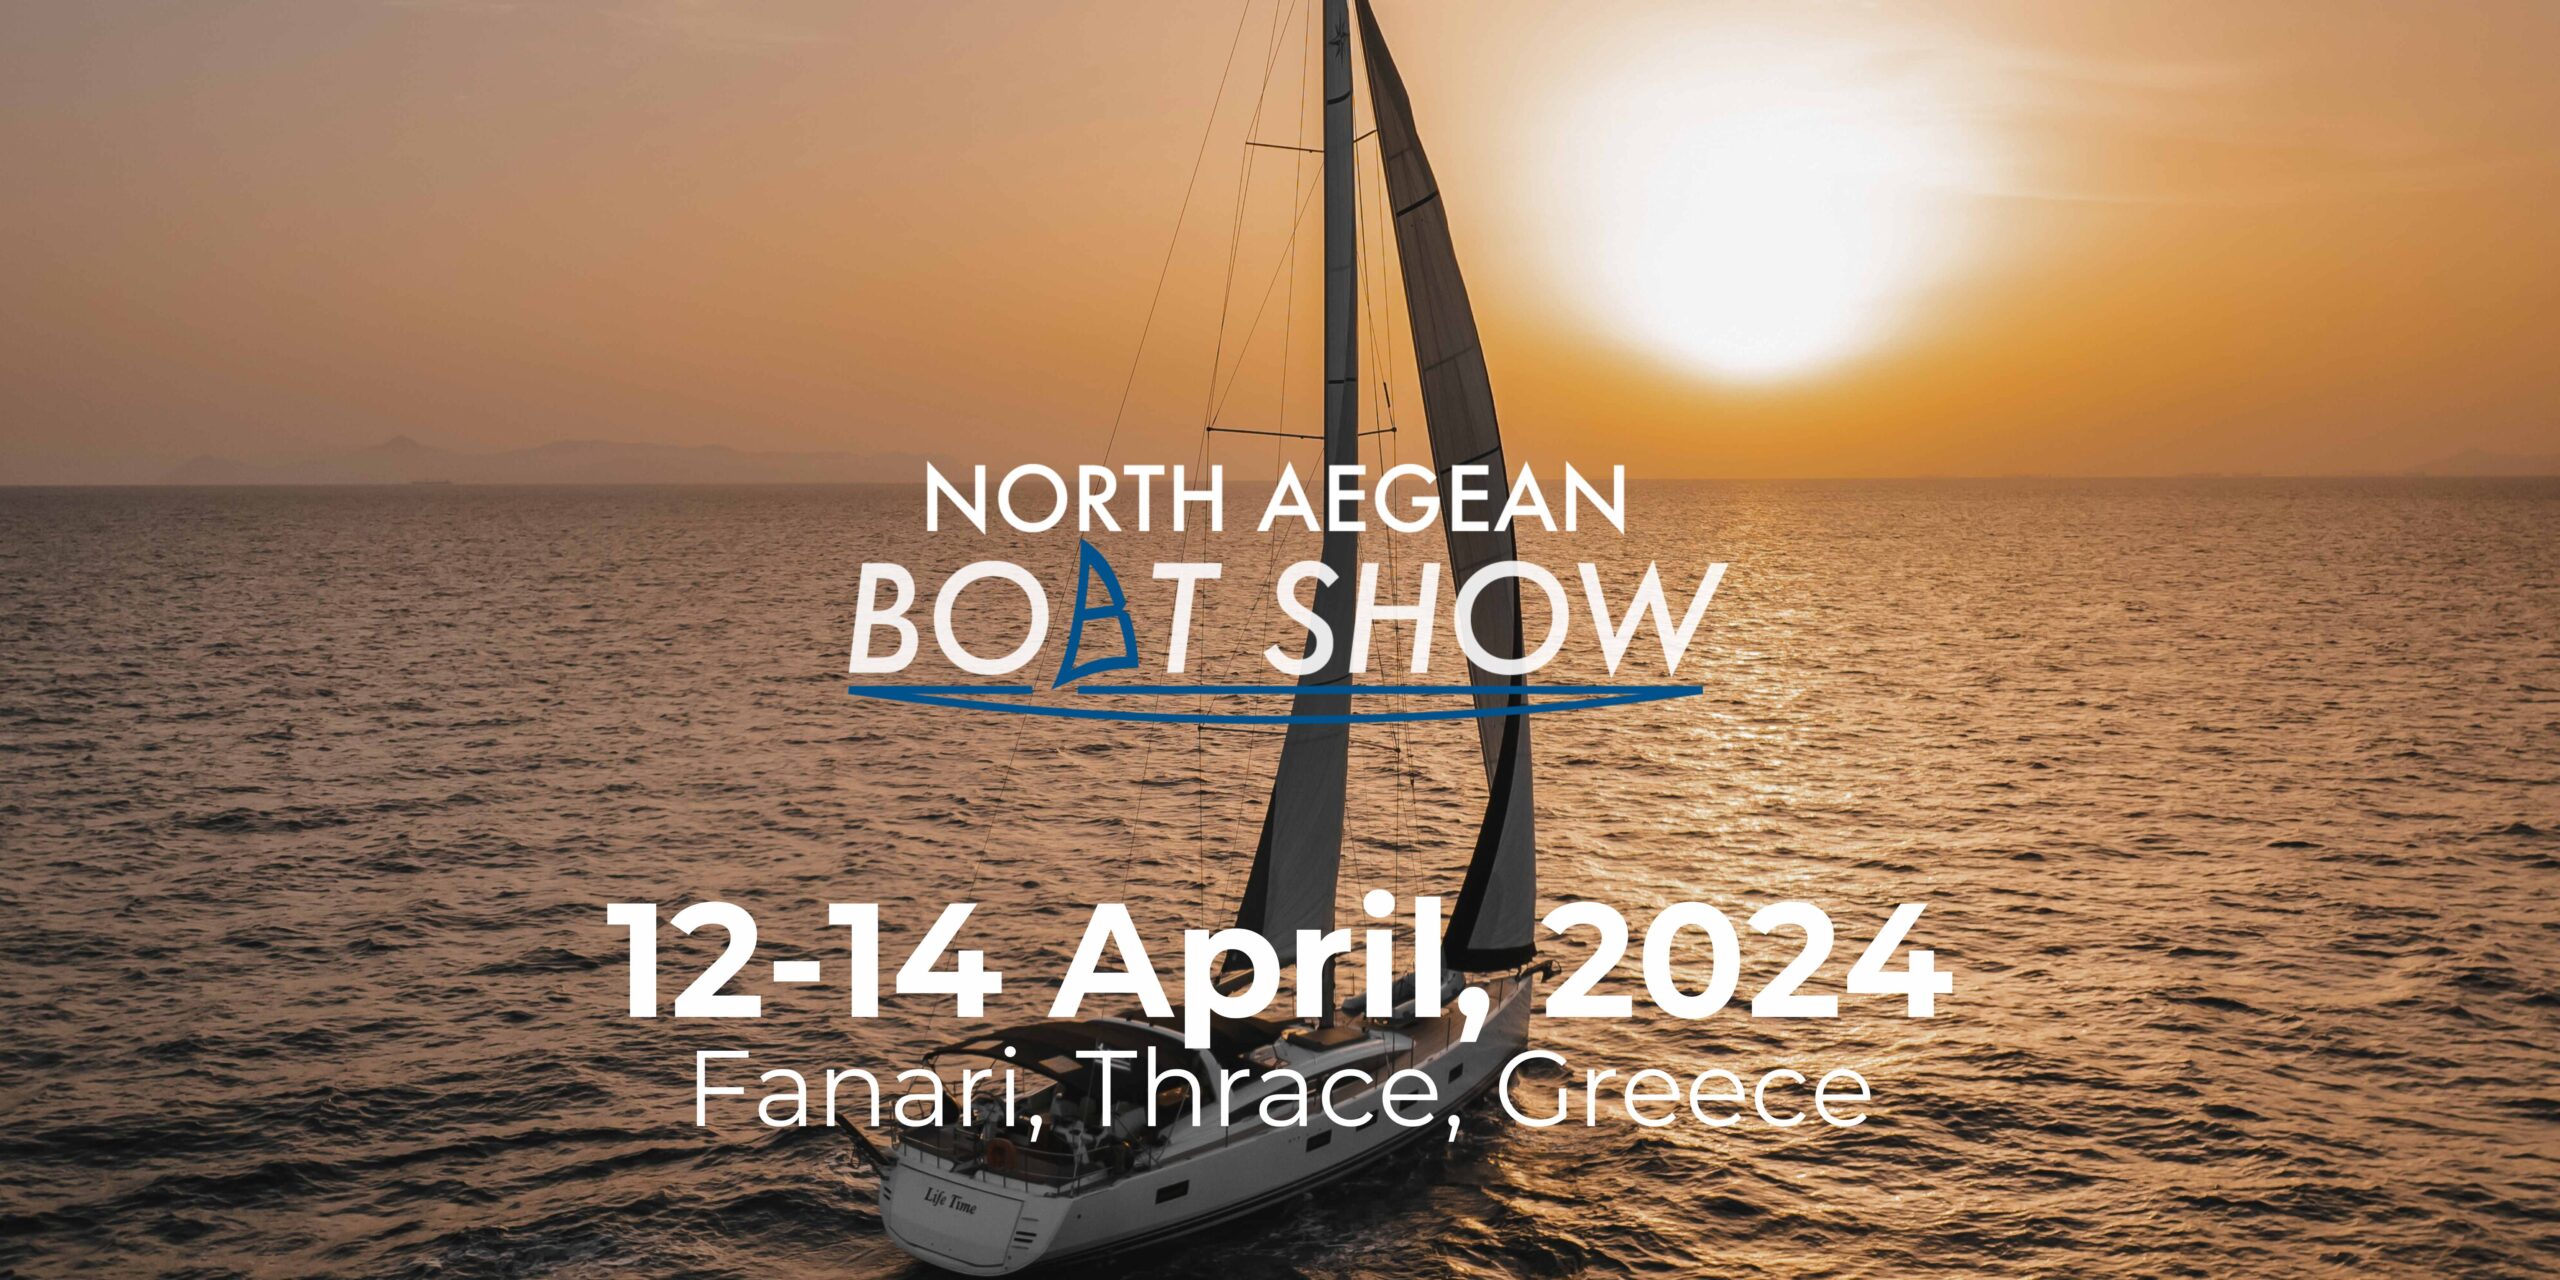 Ροδόπη: Έρχεται το “North Aegean Boat Show 2024” στο γραφικό Φανάρι του Δήμου Κομοτηνής